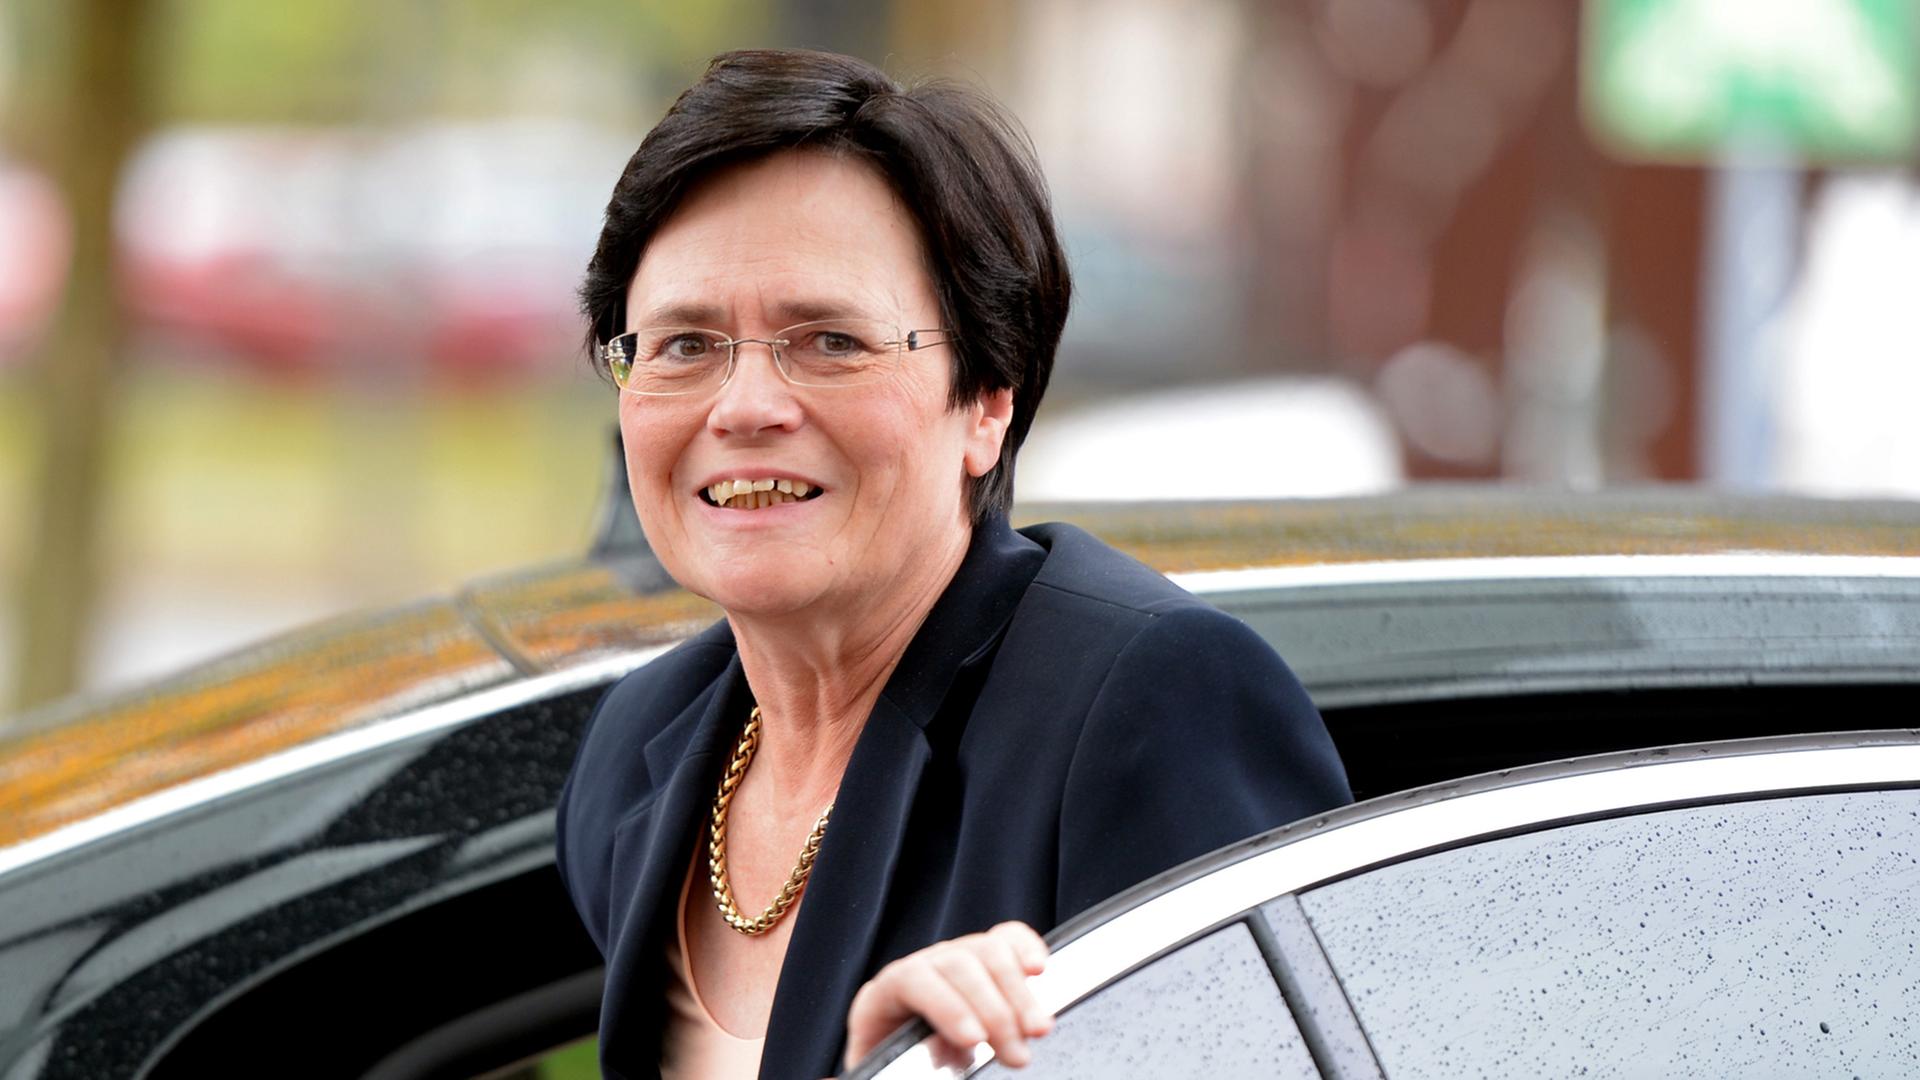  Die thüringische Ministerpräsidentin Christine Lieberknecht (CDU) steigt am 16.10.2014 bei ihrer Ankunft zum Beginn der Jahres-Ministerpräsidentenkonferenz in Potsdam (Brandenburg) aus dem Wagen